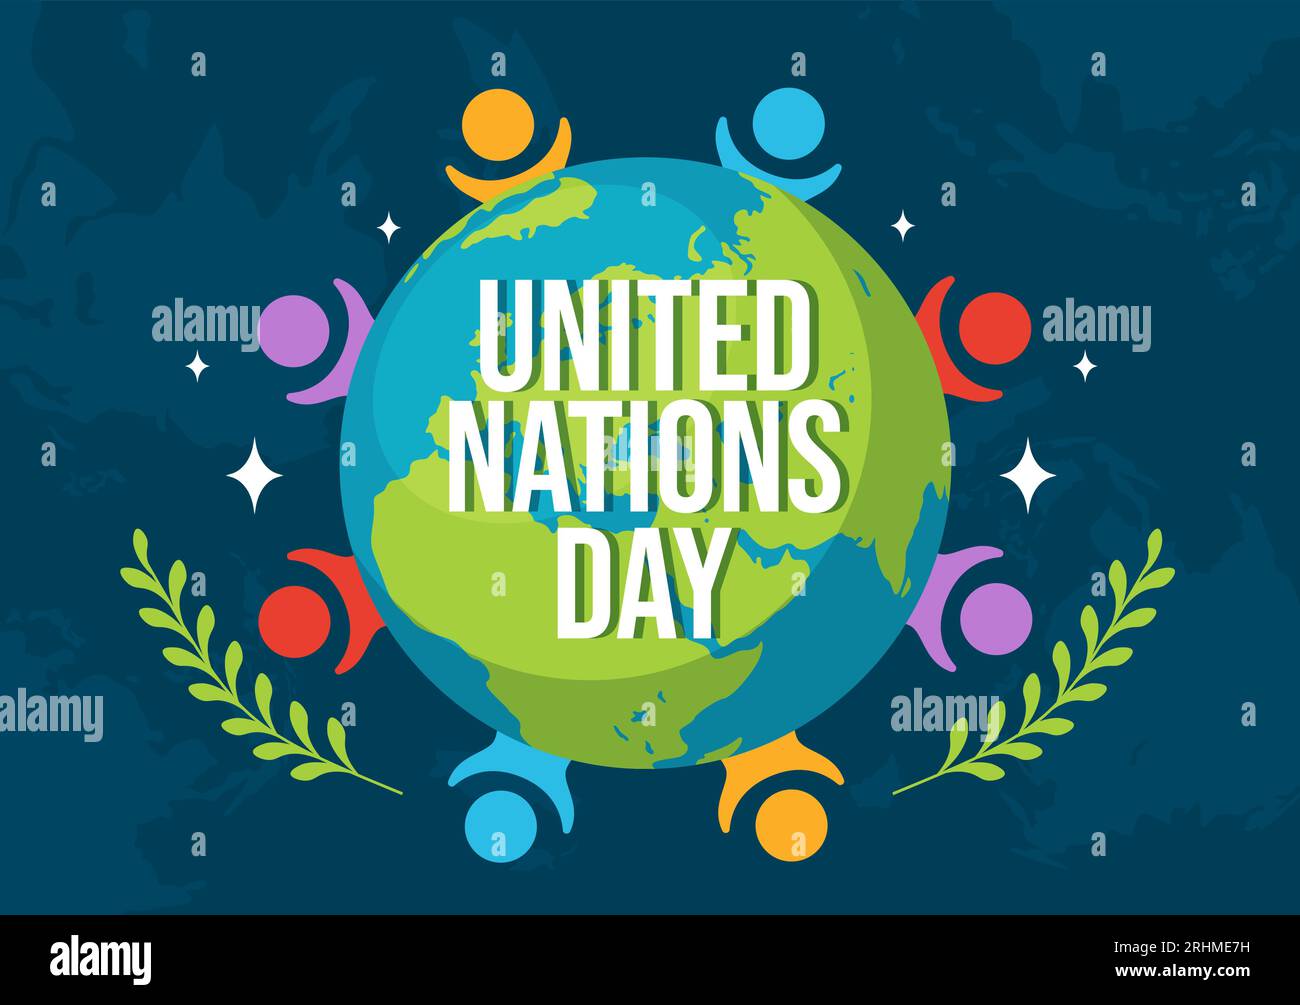 Ilustración vectorial de celebración del día de las Naciones Unidas el 24 de octubre con el servicio público de las personas y el fondo de la tierra en plantilla plana de dibujos animados Ilustración del Vector